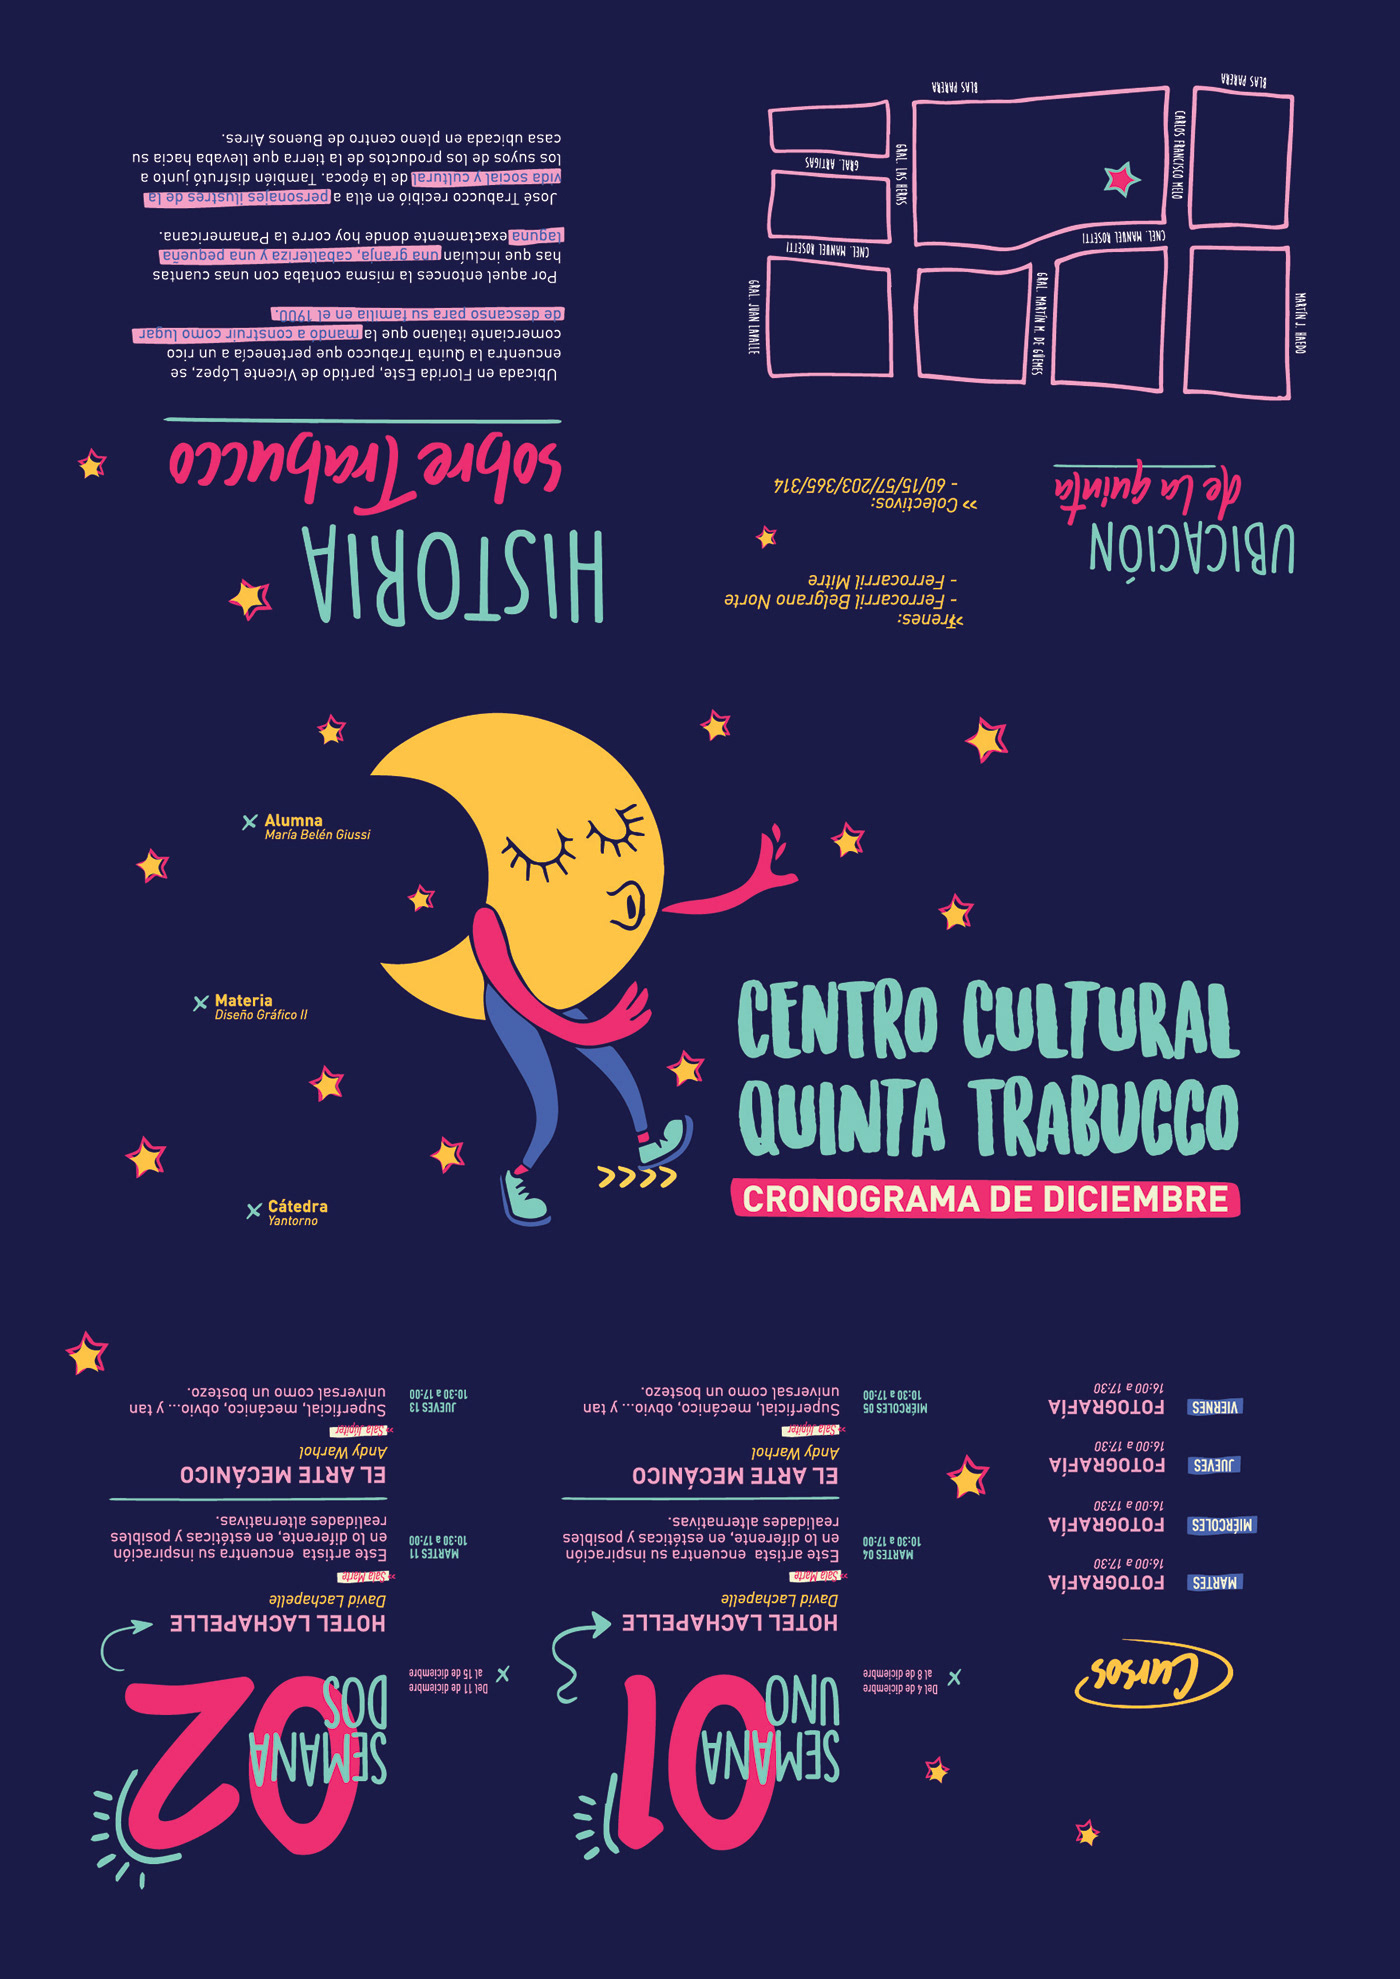 diseño gráfico Catedra Yantorno  centro cultural trabucco TP FINAL